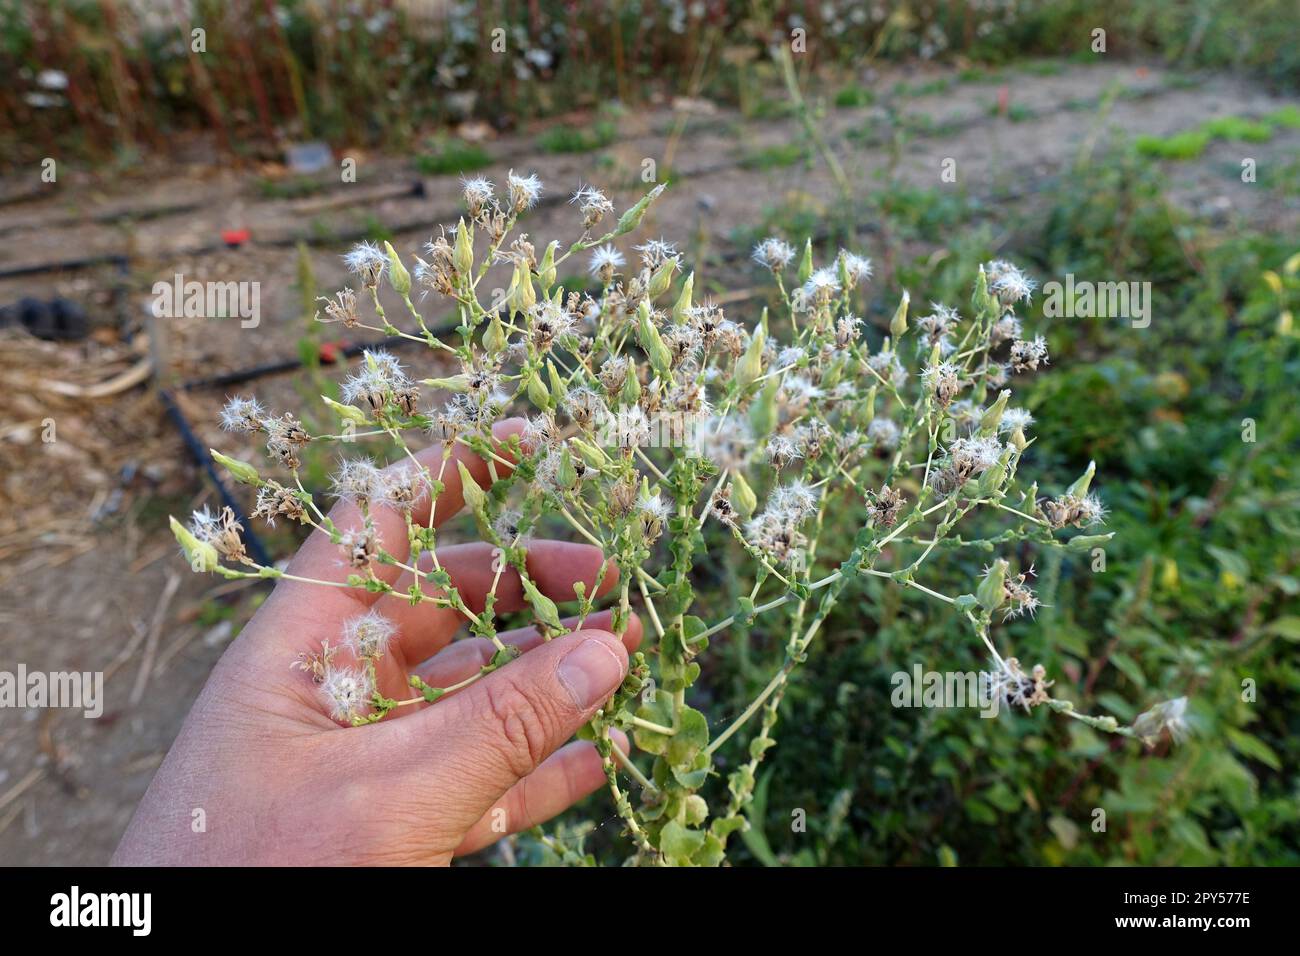 pianta di lattuga da seme riservata ai semi in giardino, semi di lattuga ravvicinata, lattughe da seme, semi di ortaggi Foto Stock